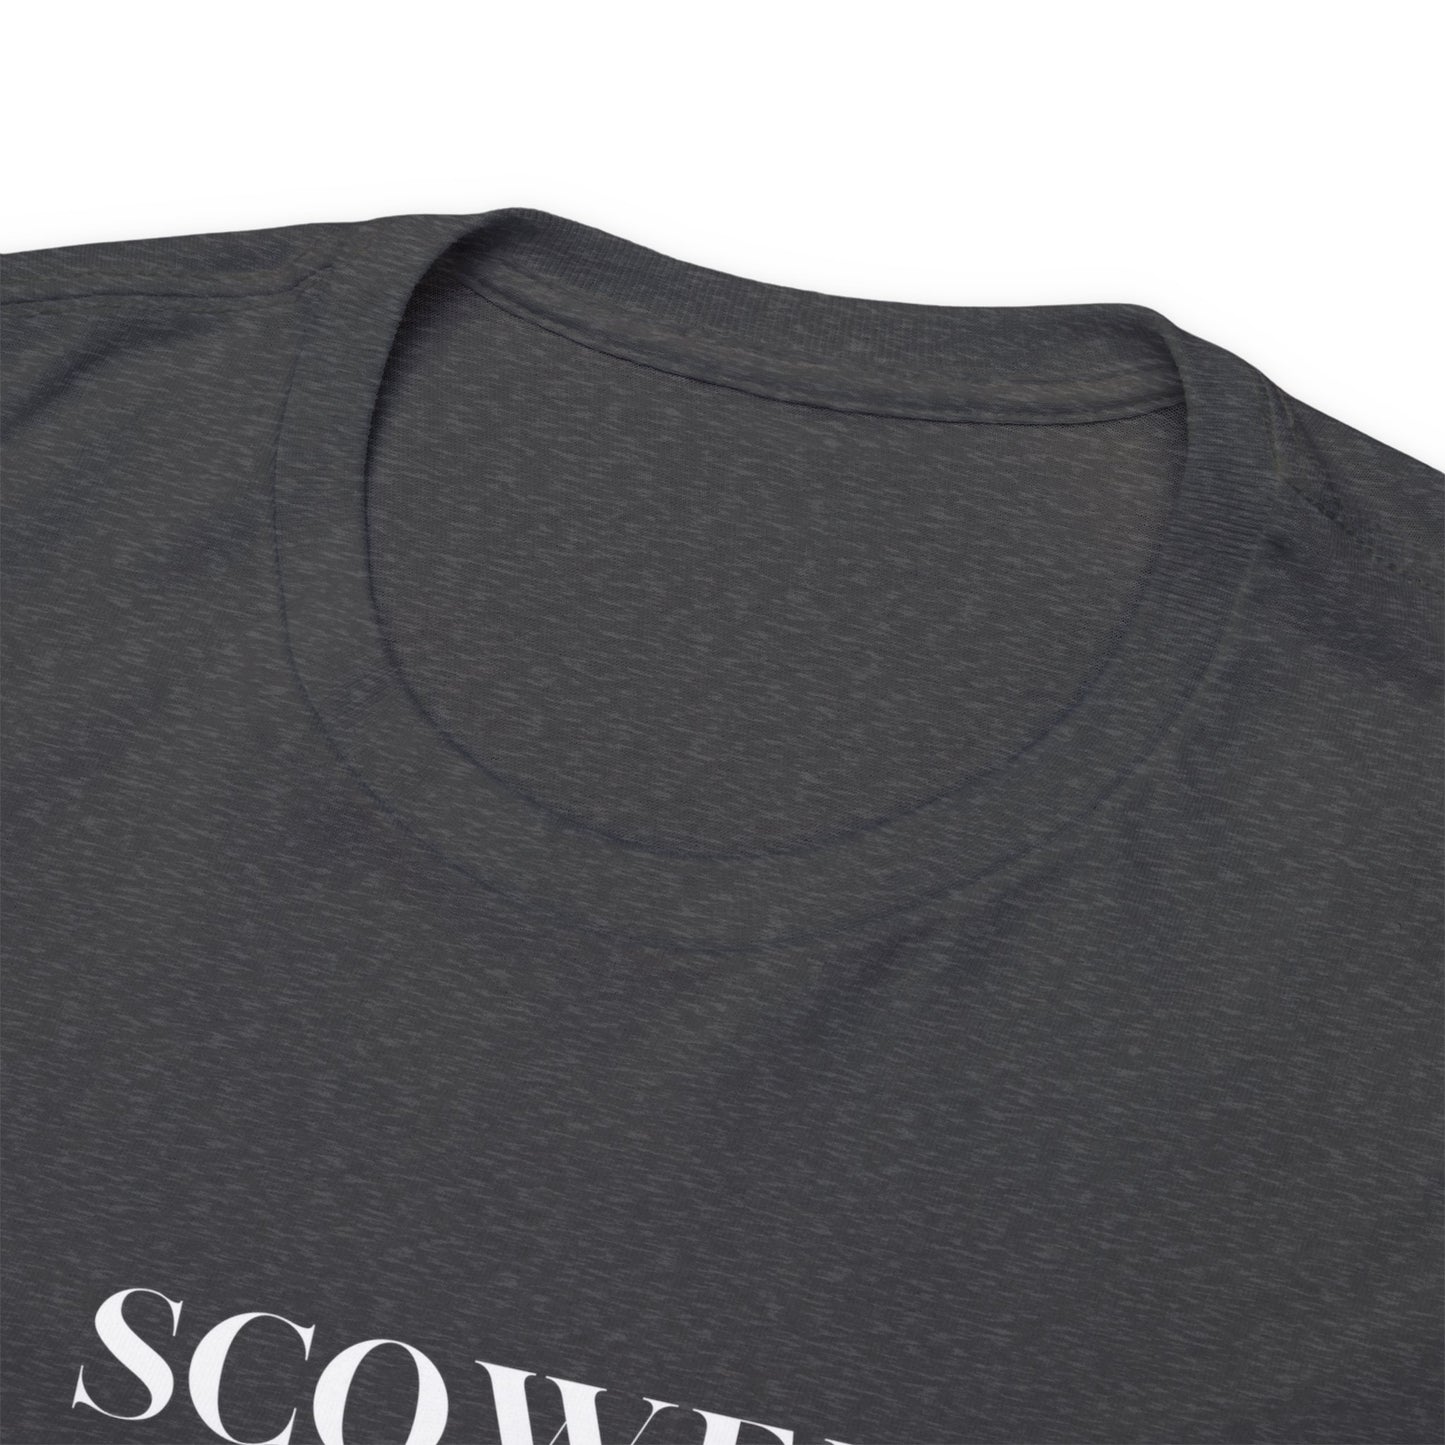 Scowen Beast T-shirt